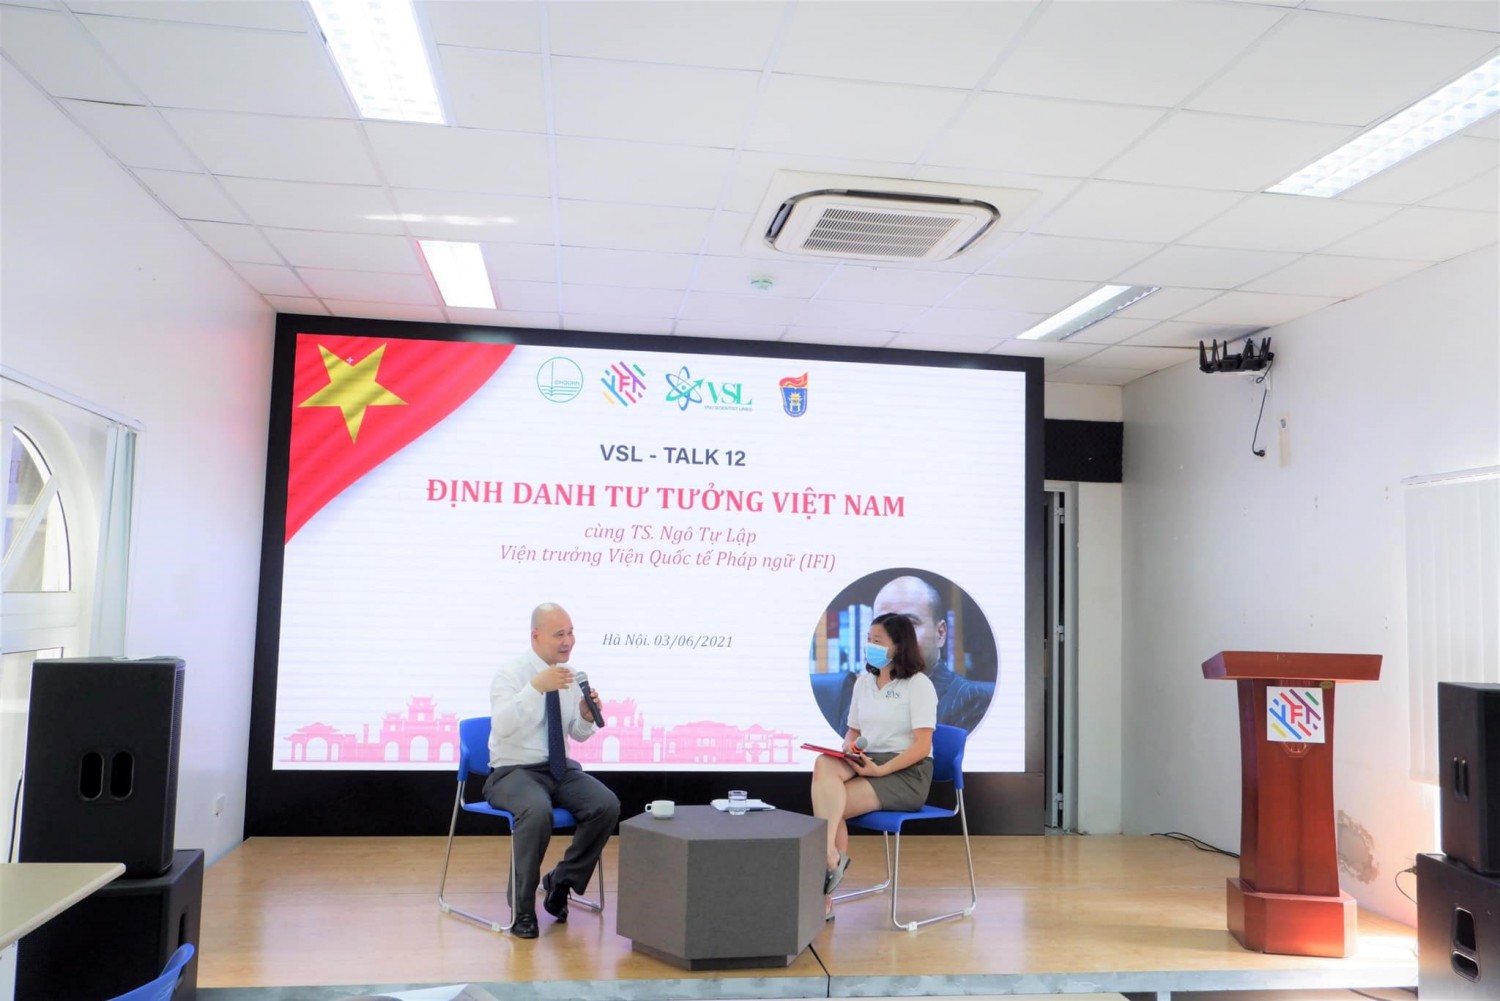 Sự kiện VSL-TALK 12 với chủ đề “Định danh tư tưởng Việt Nam”